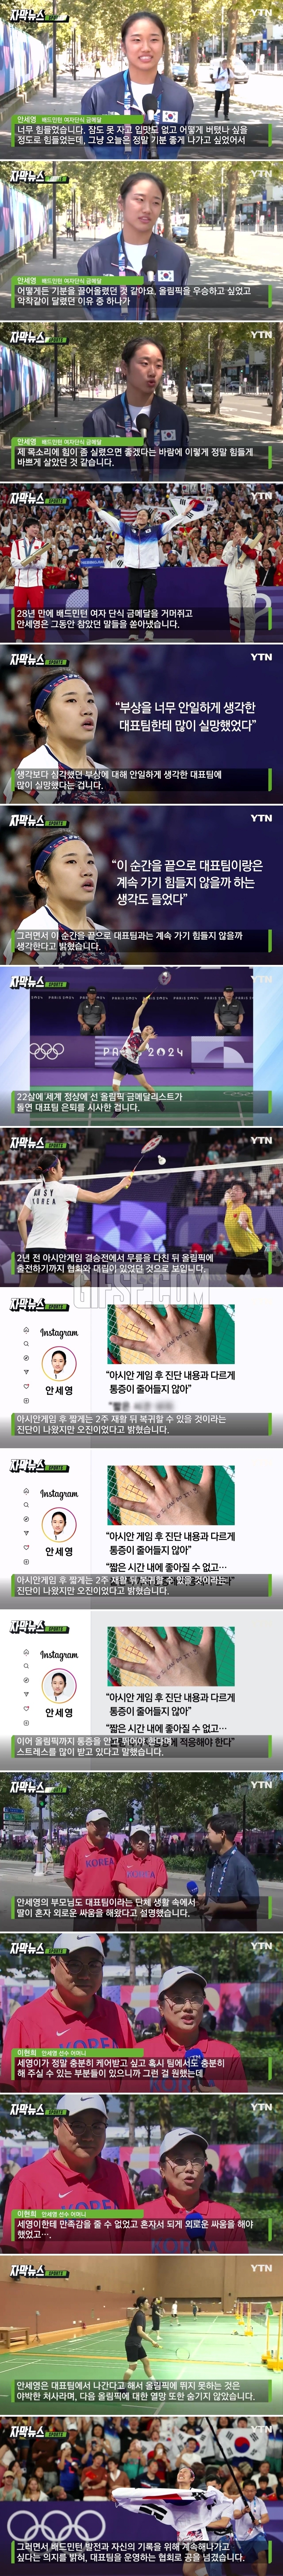 안세영 부모님도 딸, 외로운 싸움 했다 .대표팀 ',저격',.jpg